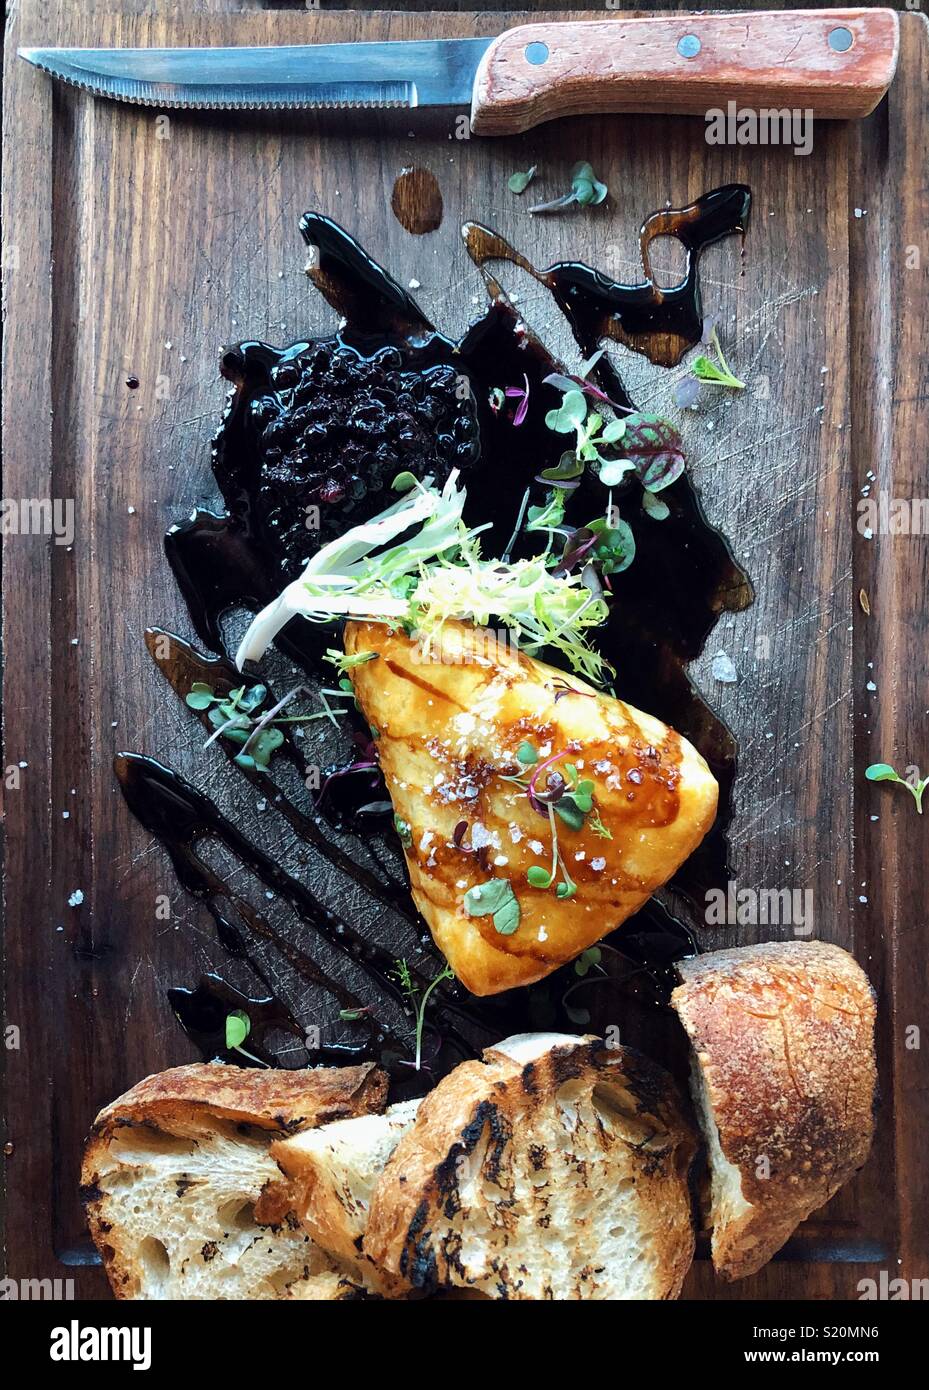 Baked brie Keil auf einem dunklen Holz Bord mit geröstetem Brot und Wild Blueberry Kompott Stockfoto